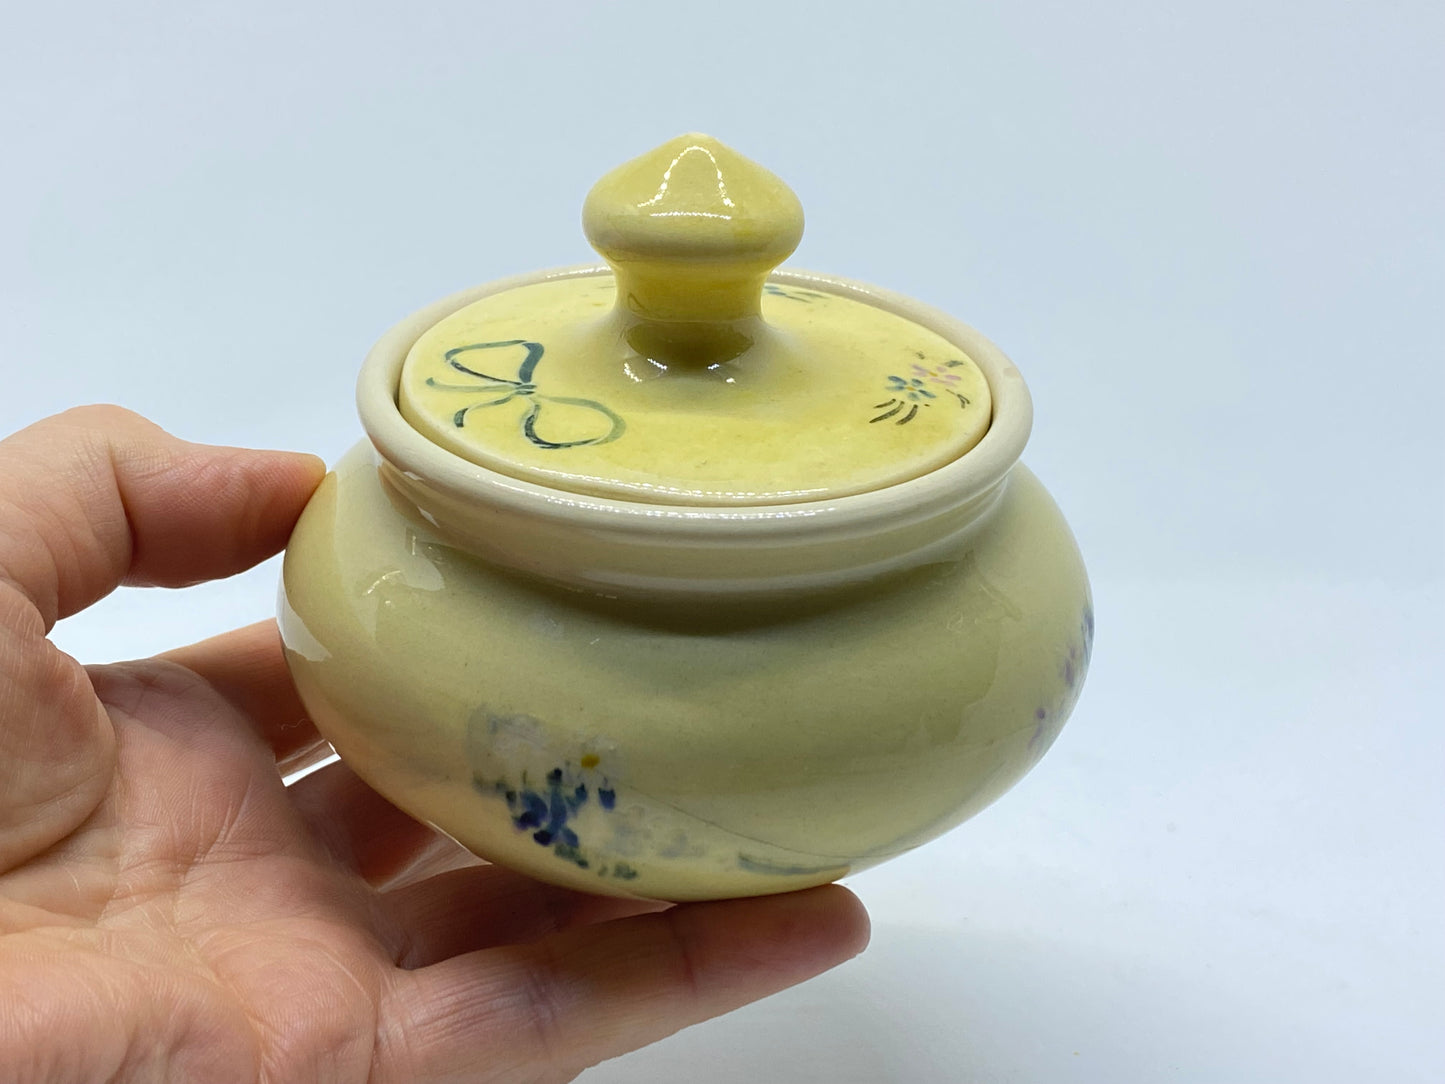 Martin Boyd trinket bowl with lid 1948-1963